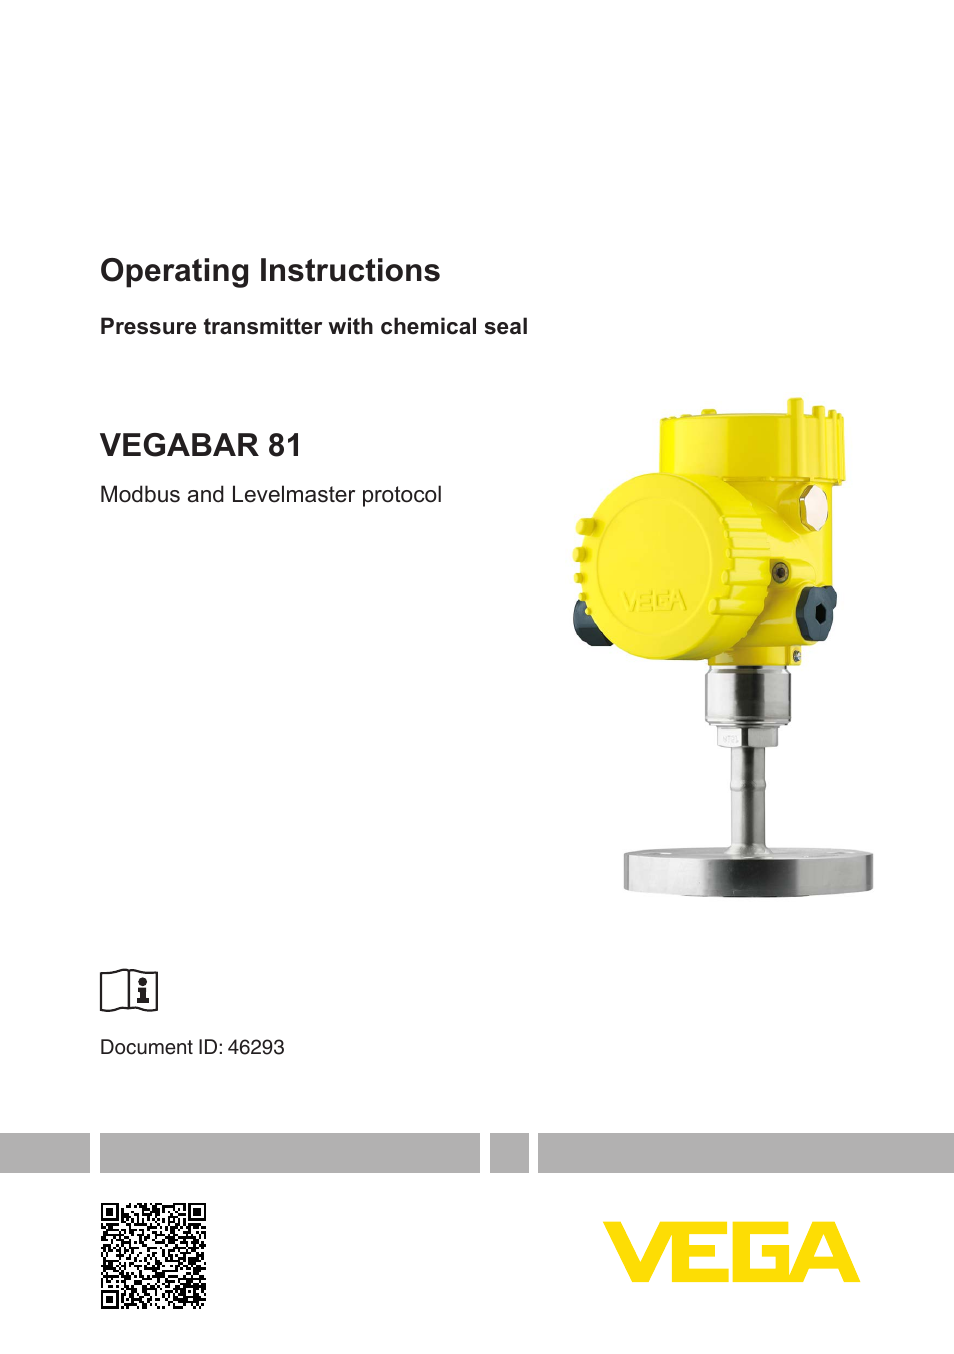 VEGABAR 81 Modbus and Levelmaster protocol - Operating Instructions